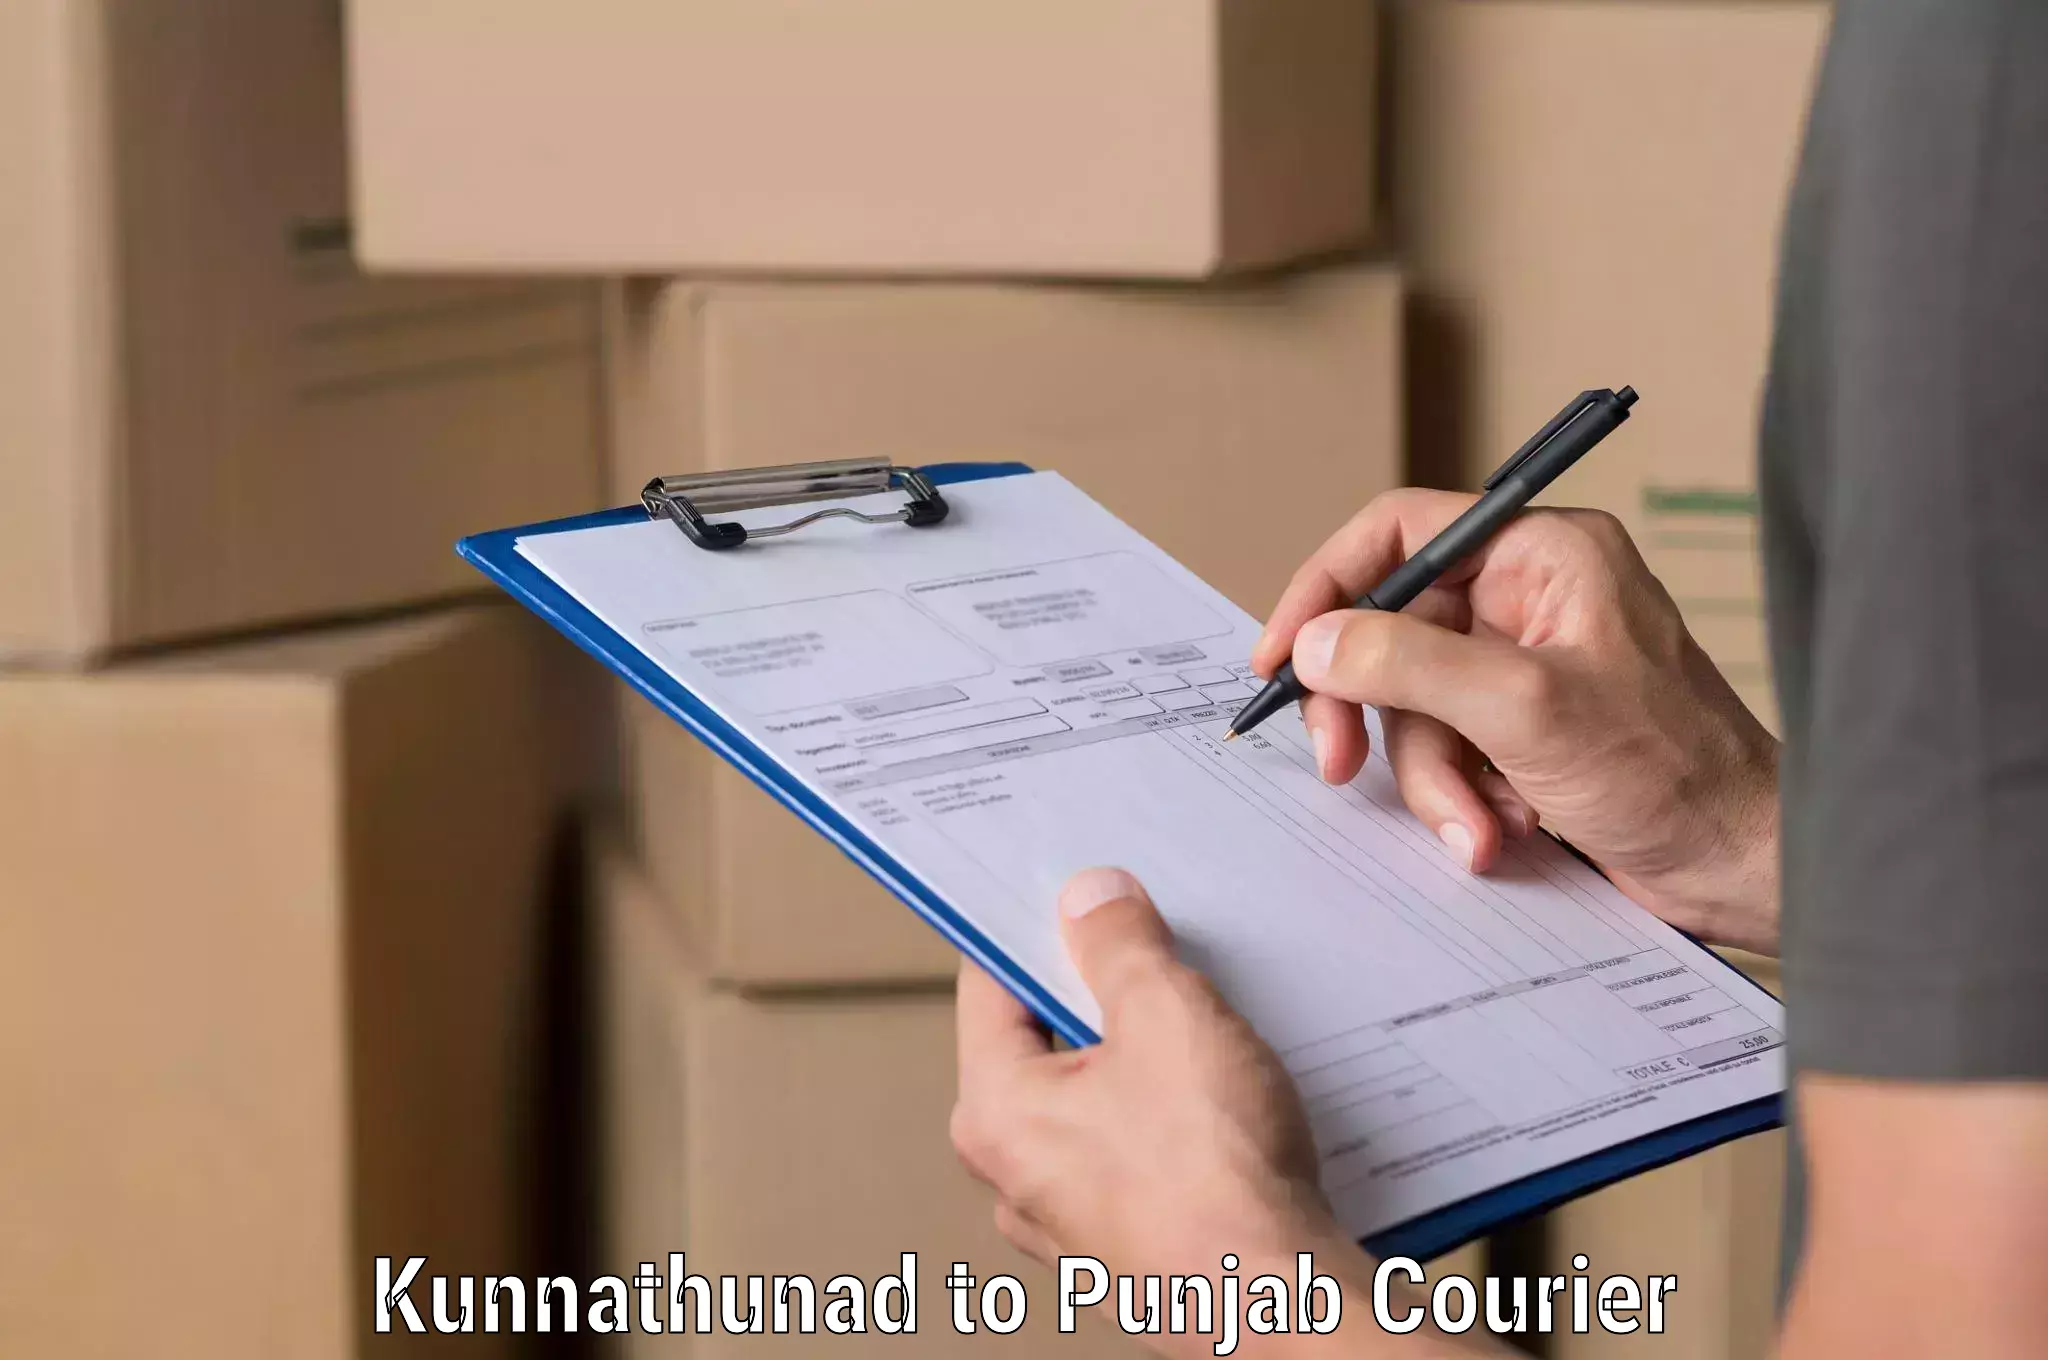 Global shipping solutions Kunnathunad to Ajnala